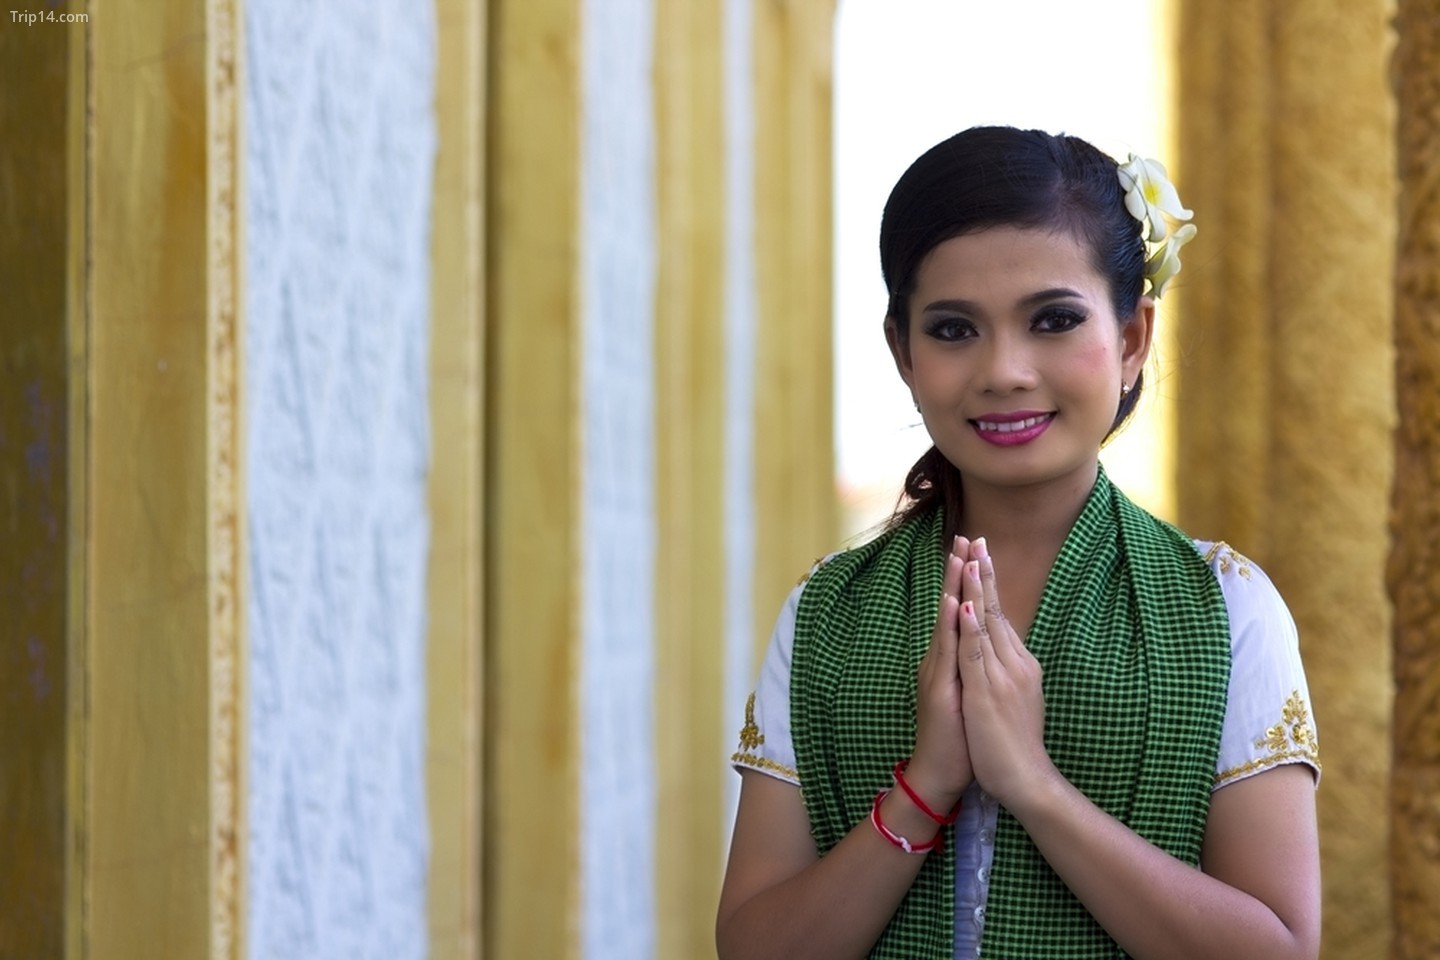  Cách chào hỏi truyền thống của người Campuchia   |   